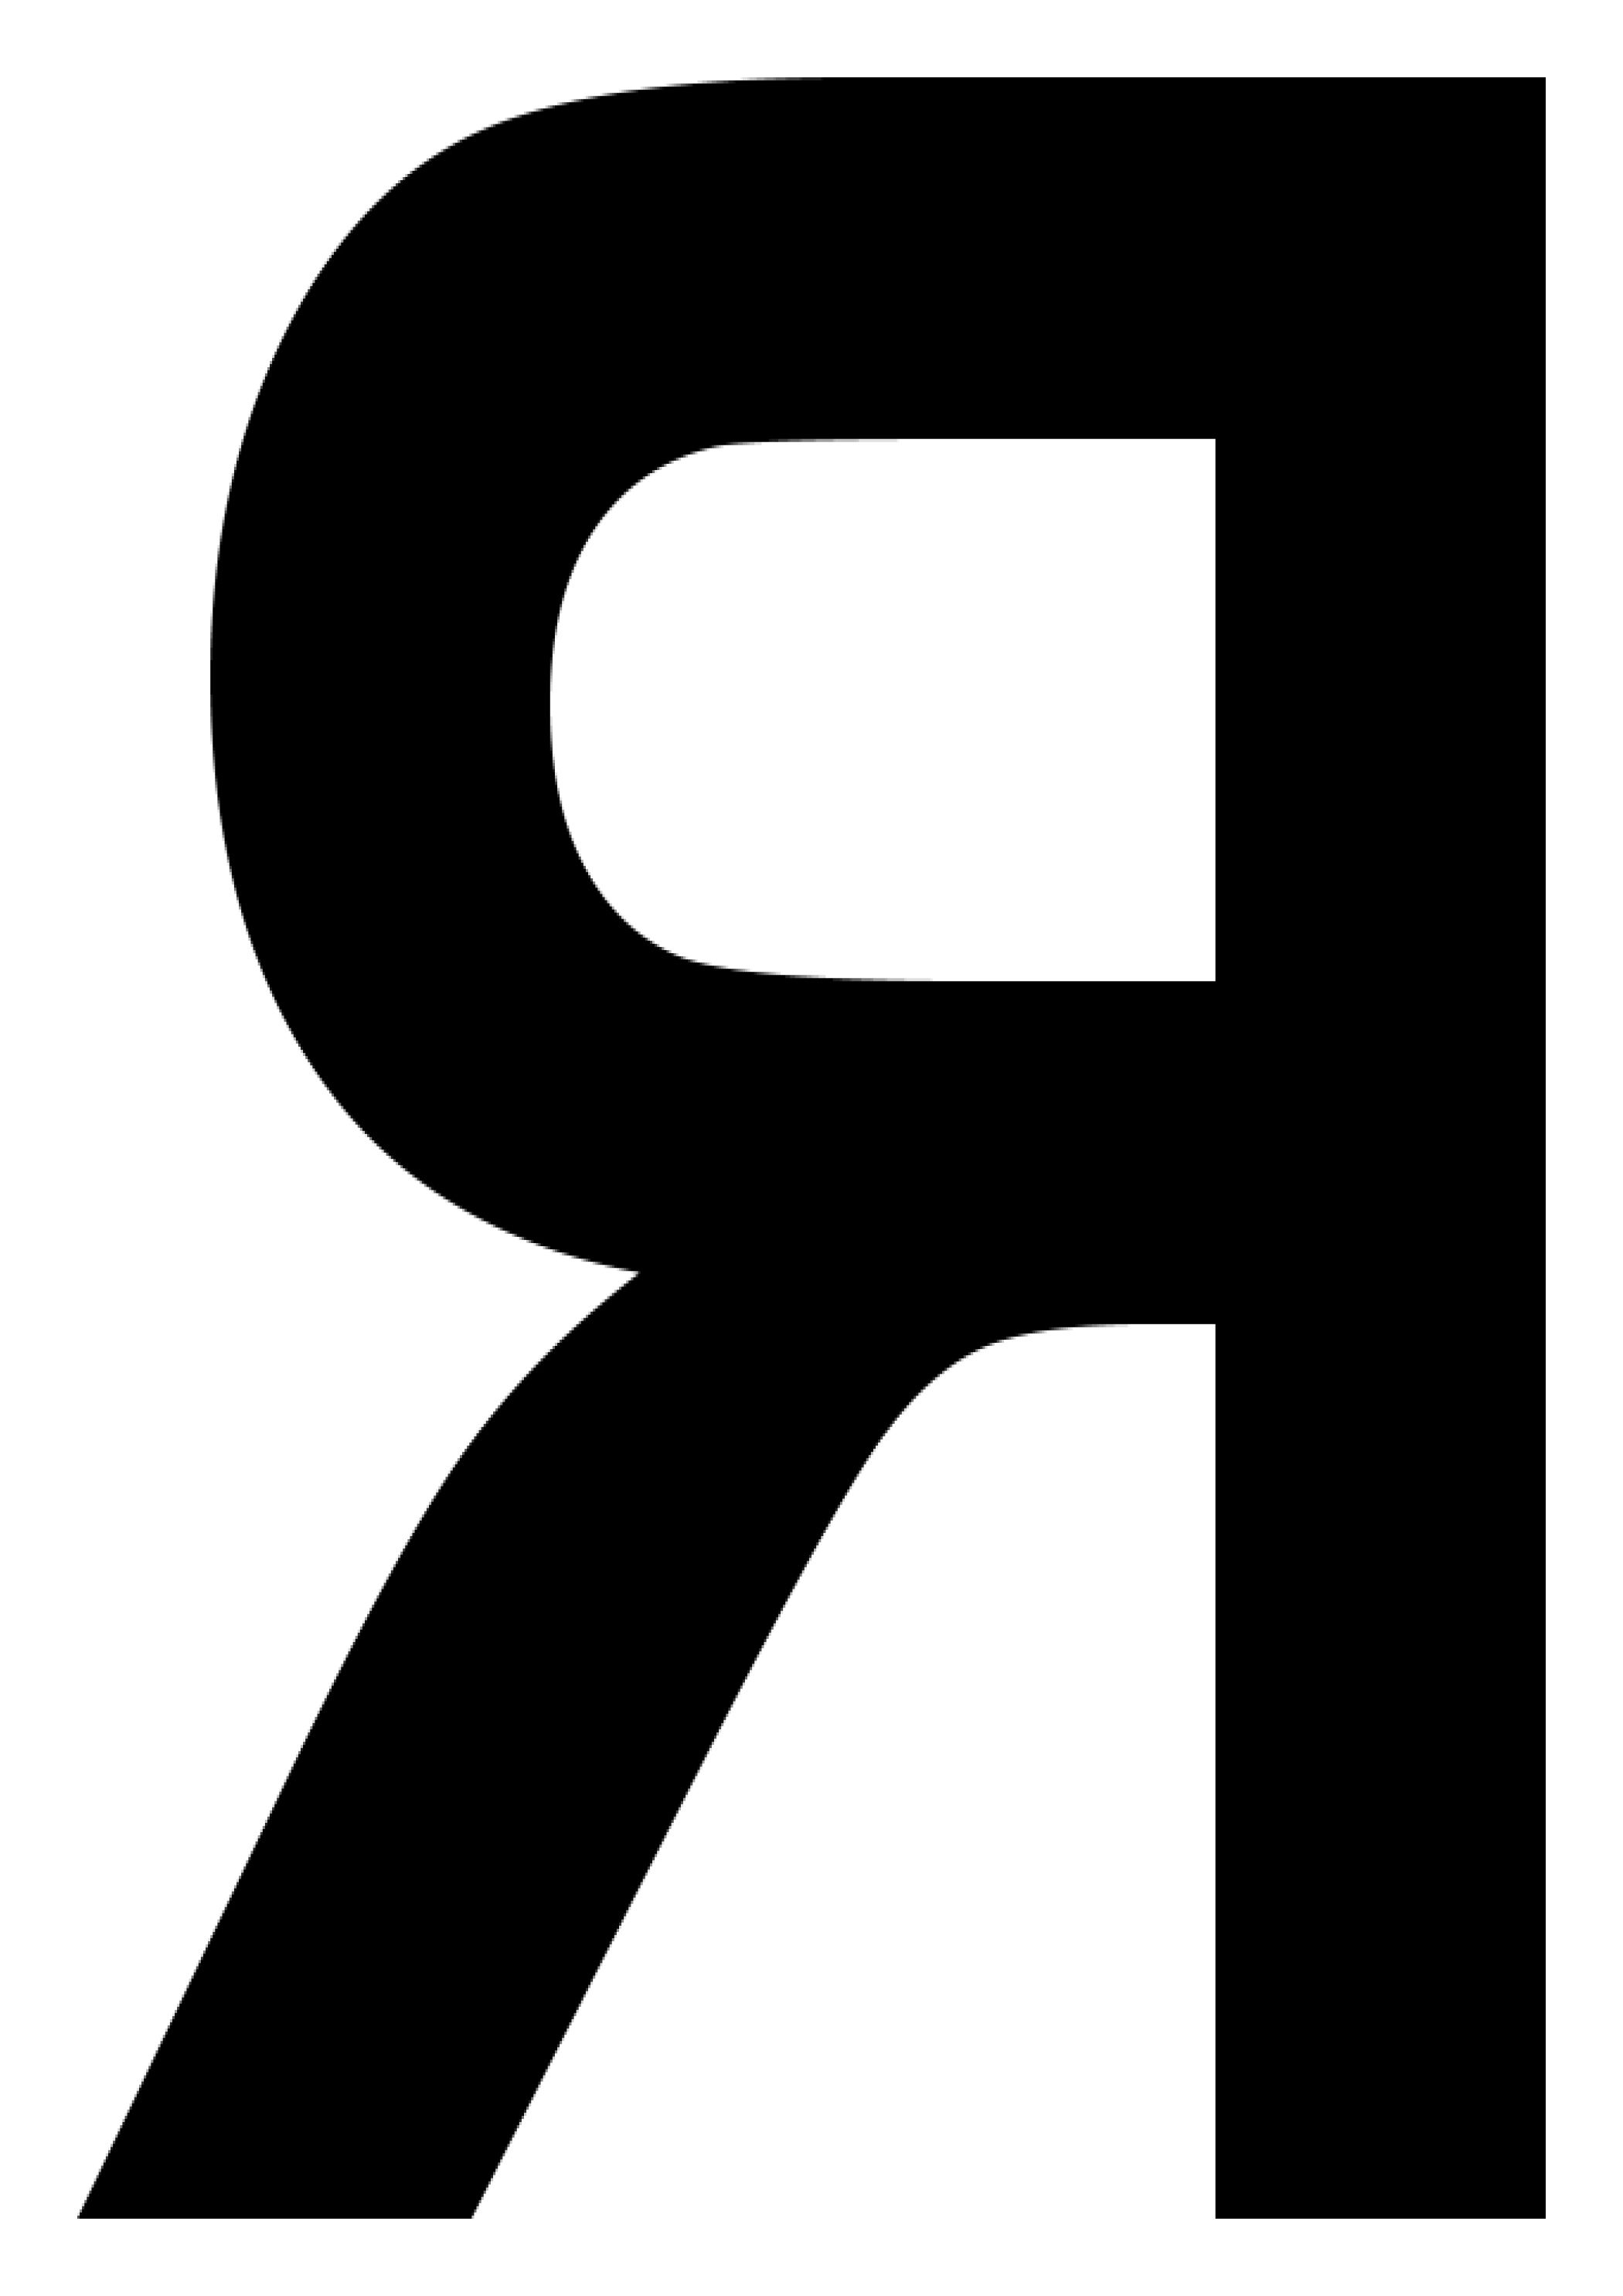 lettres de lalphabet de a a z et chiffres de 0 a 9 divers signes usuels au format pdf a4